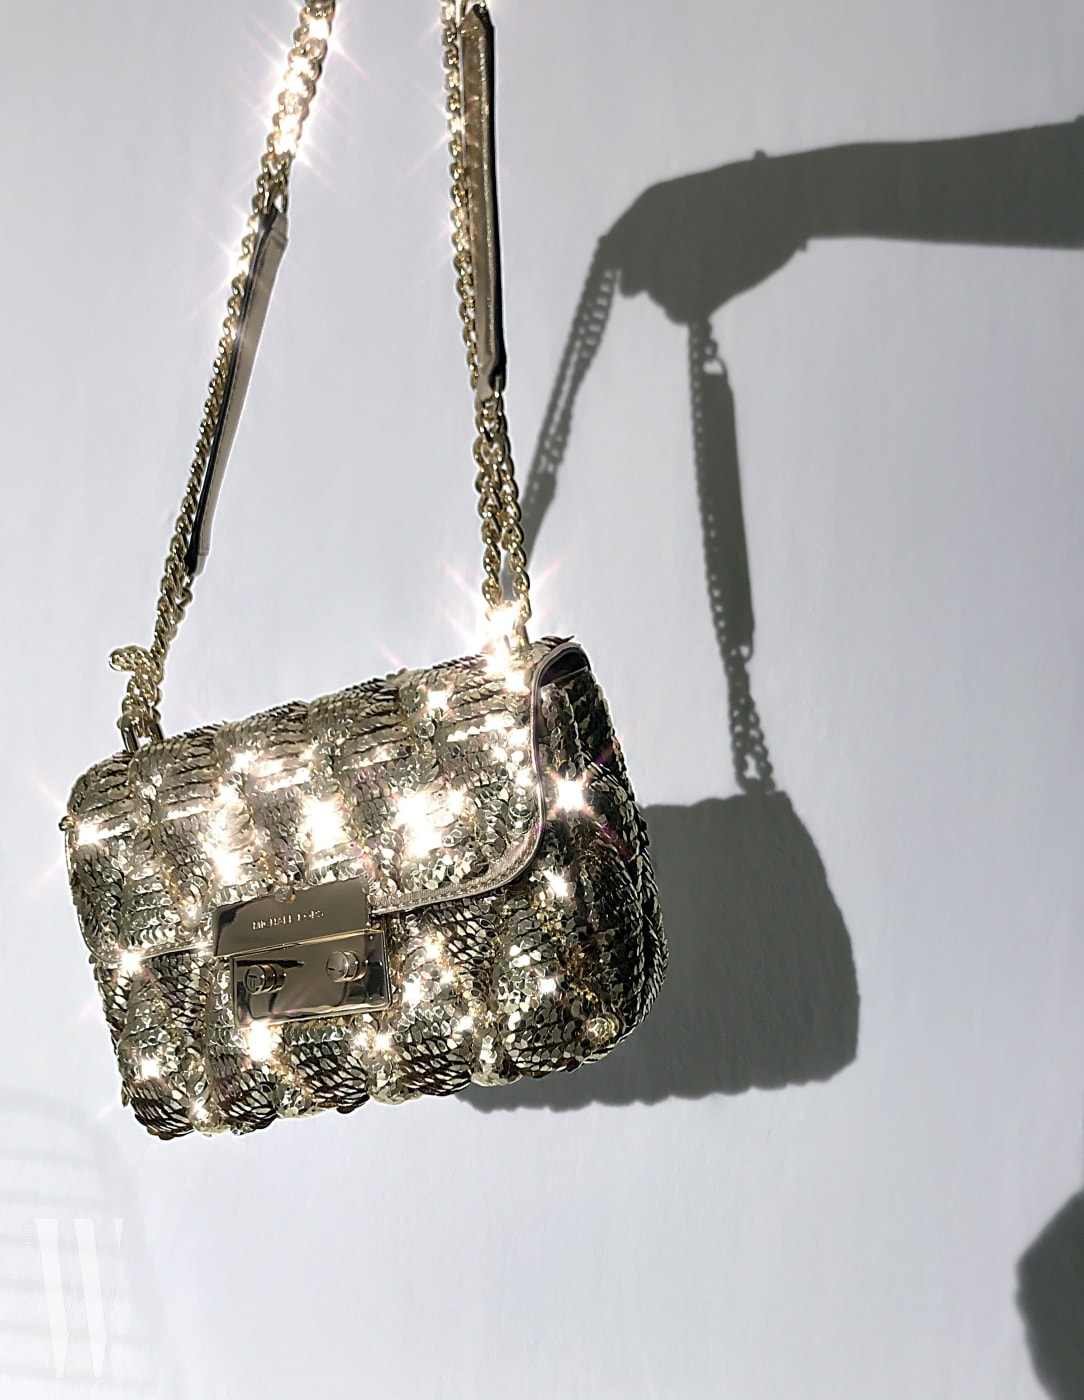 화려한 시퀸 장식으로 뒤덮인 금빛 핸드백은 마이클 마이클 코어스 제품. 60만원대.